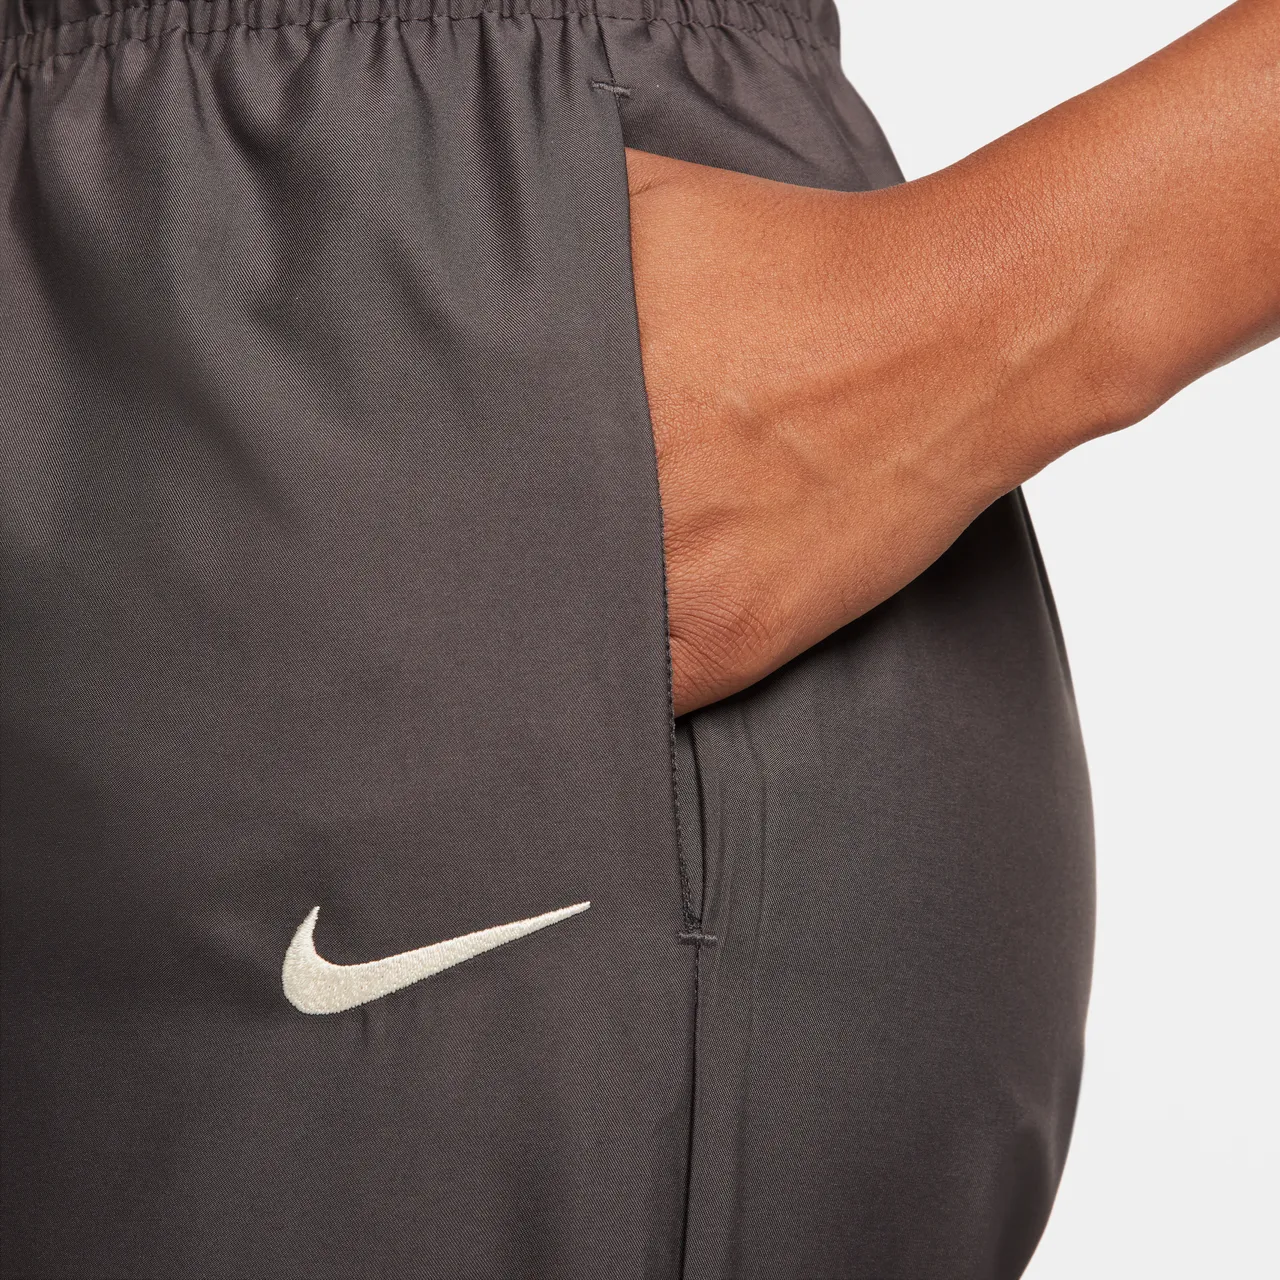 Nike Sportswear geweven joggingbroek voor dames - Bruin